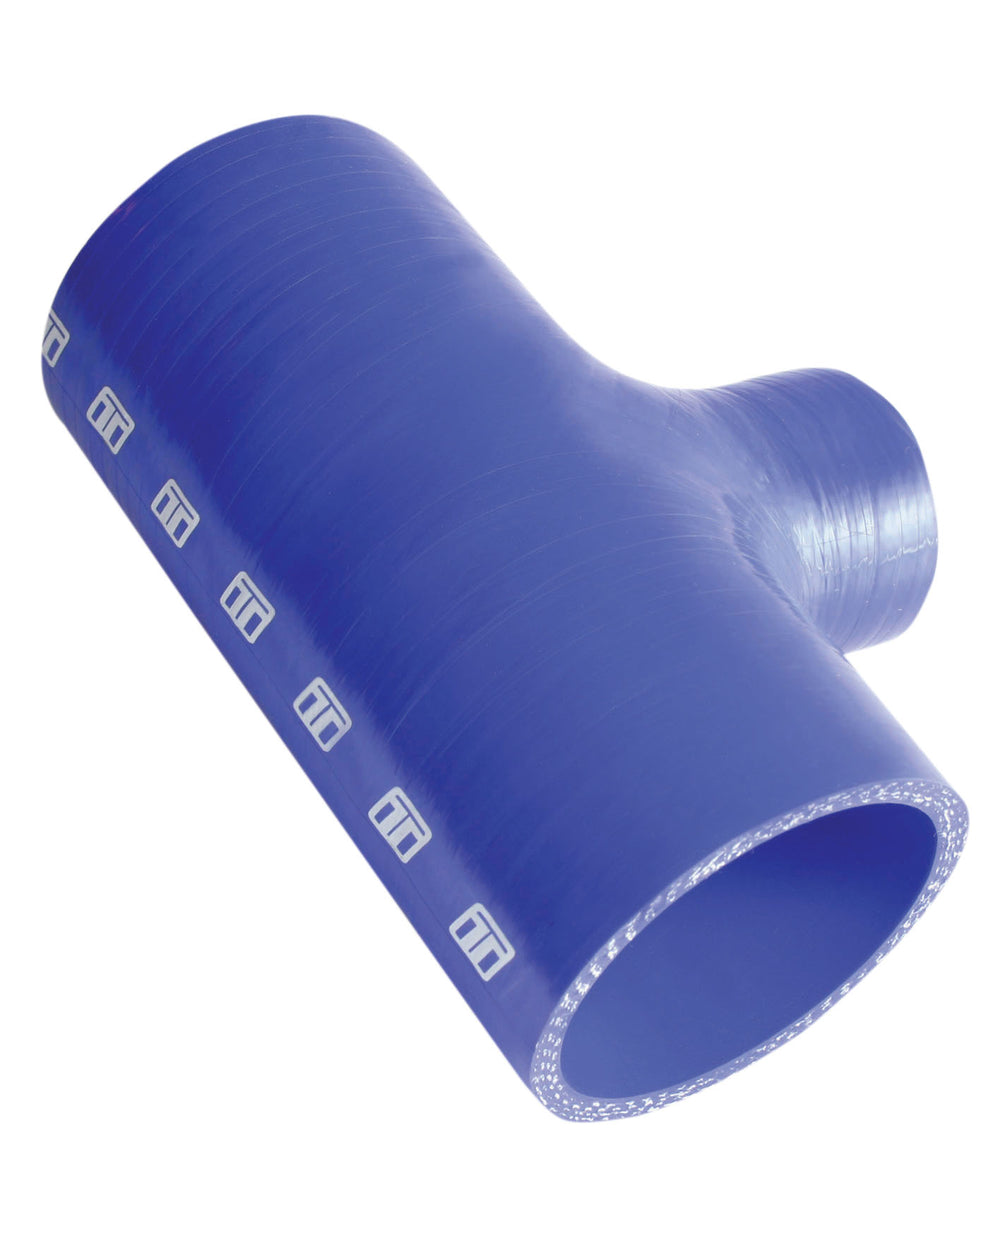 Turbosmart Intercooler Hose Kit (Hose Tee 2.25" ID 1.5" spout - Blue)